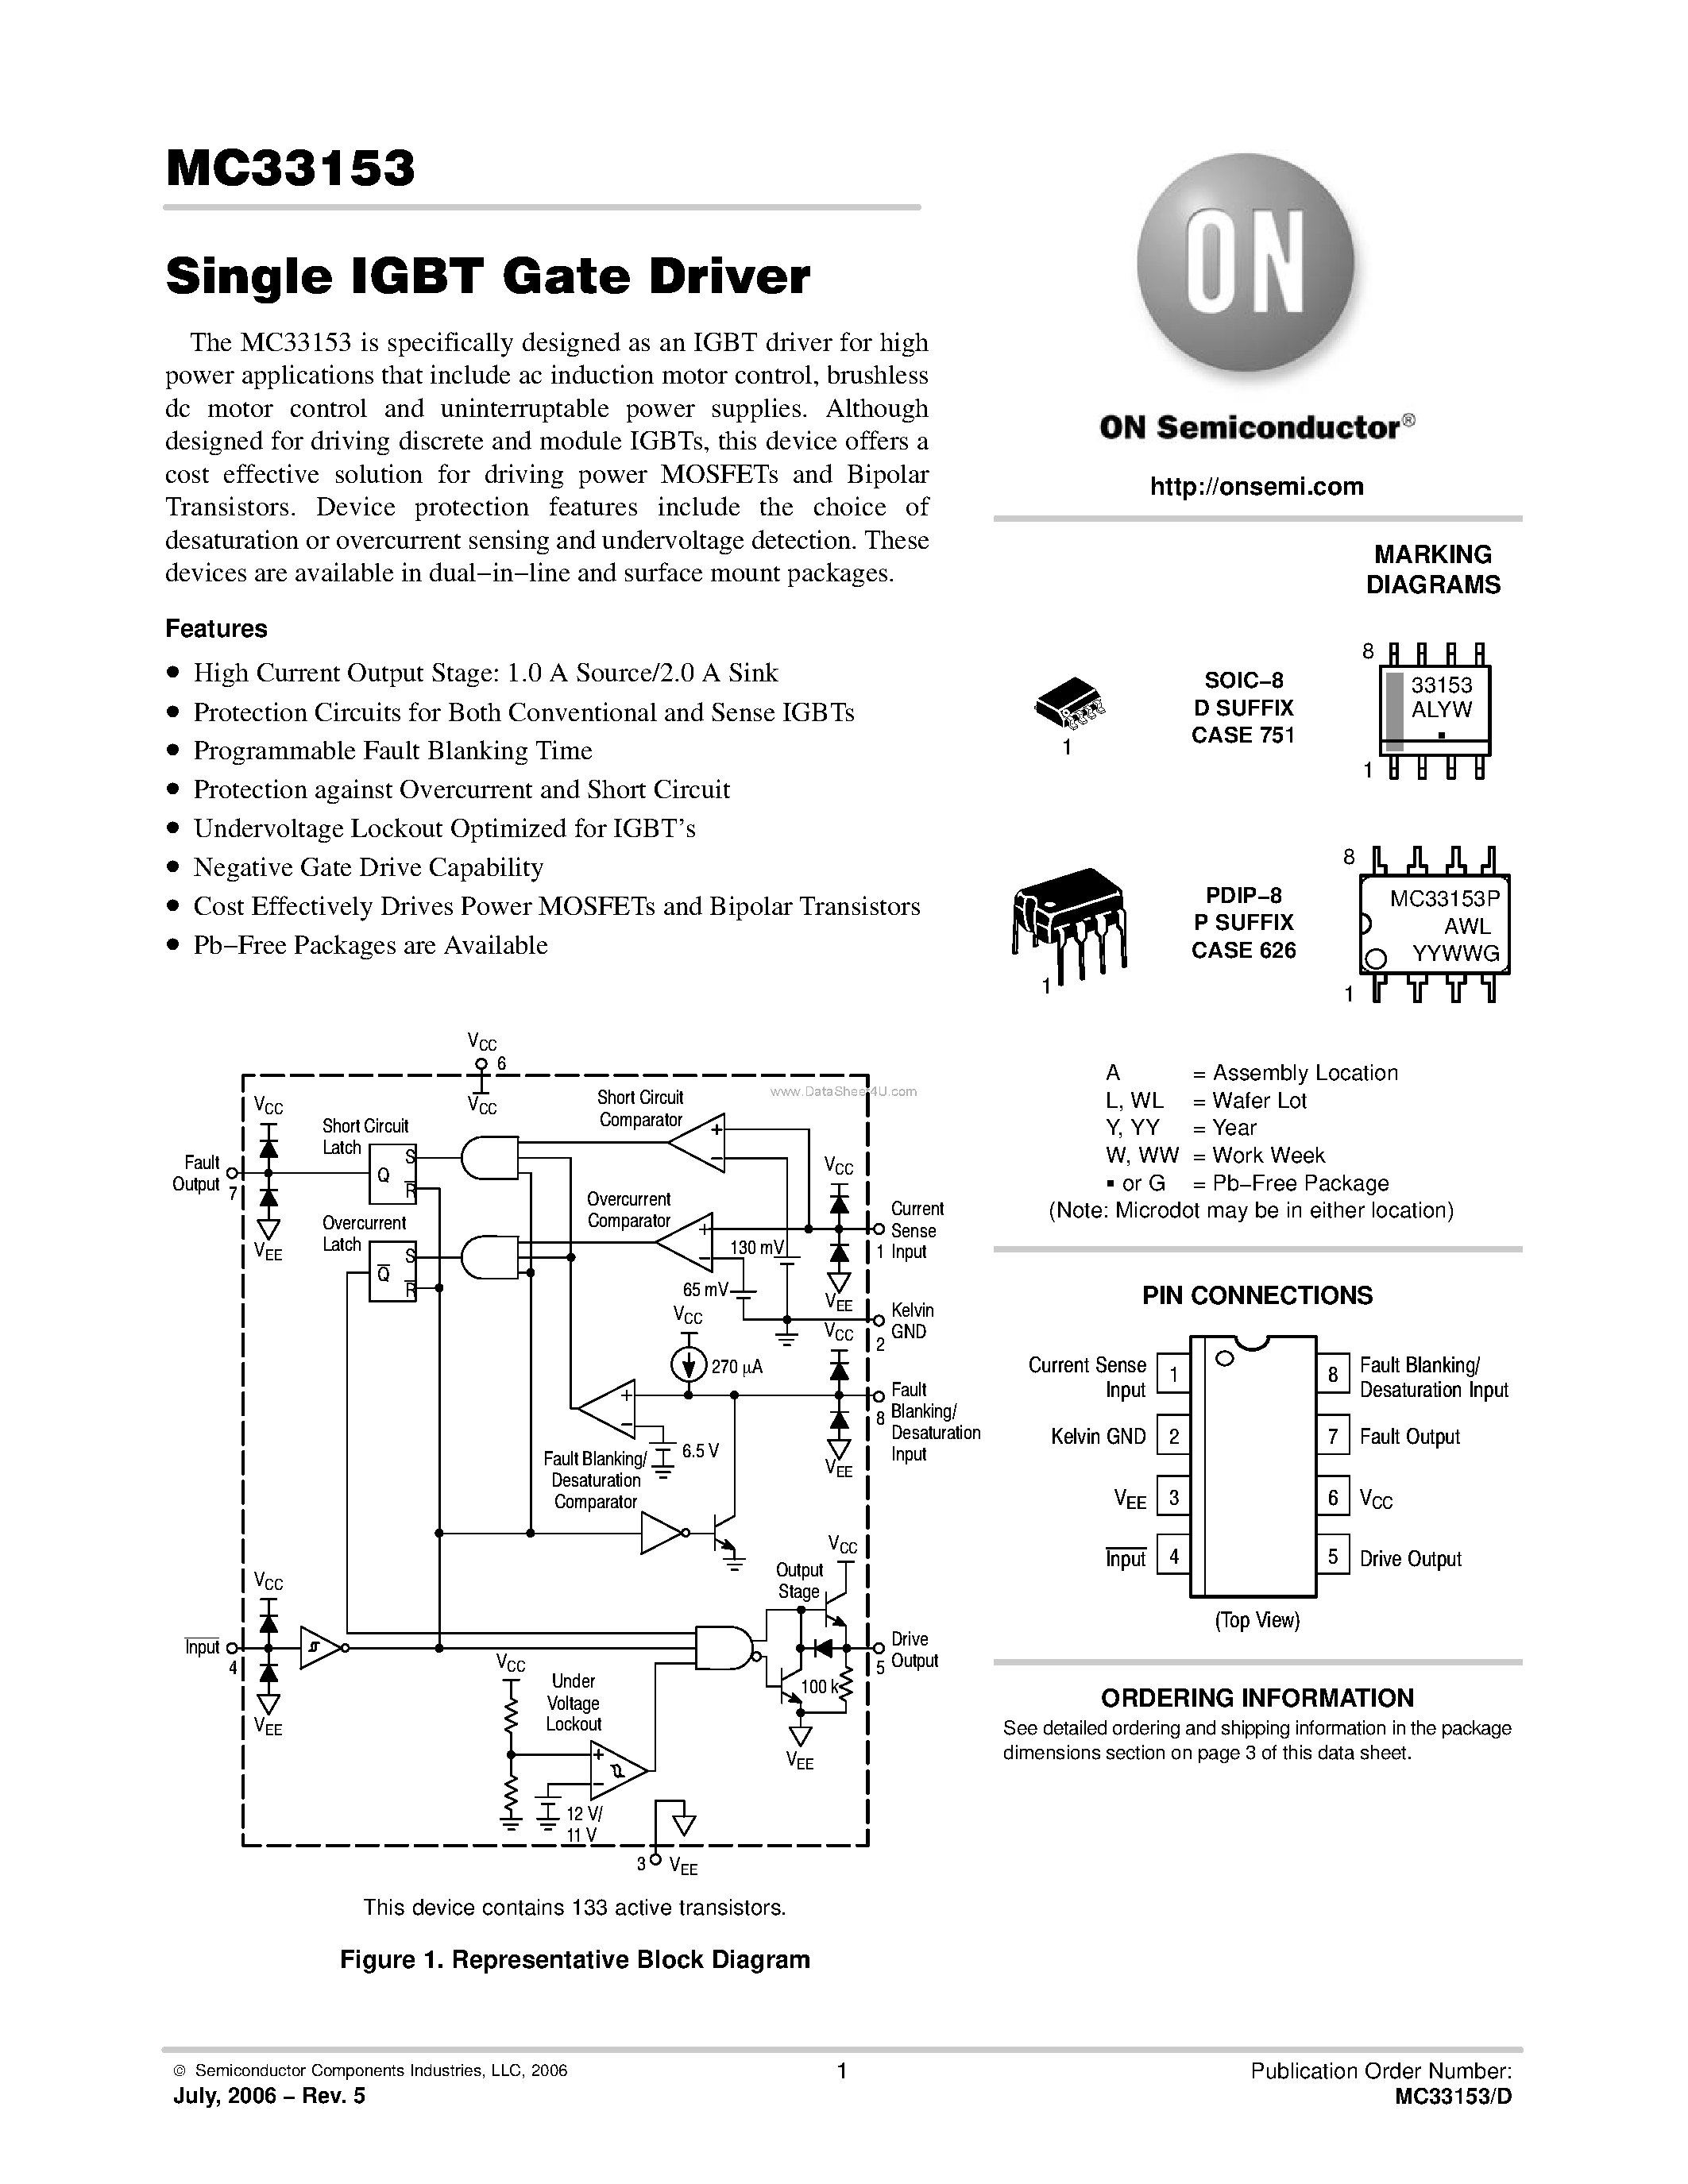 Datasheet MC33153 - Single IGBT Gate Driver page 1